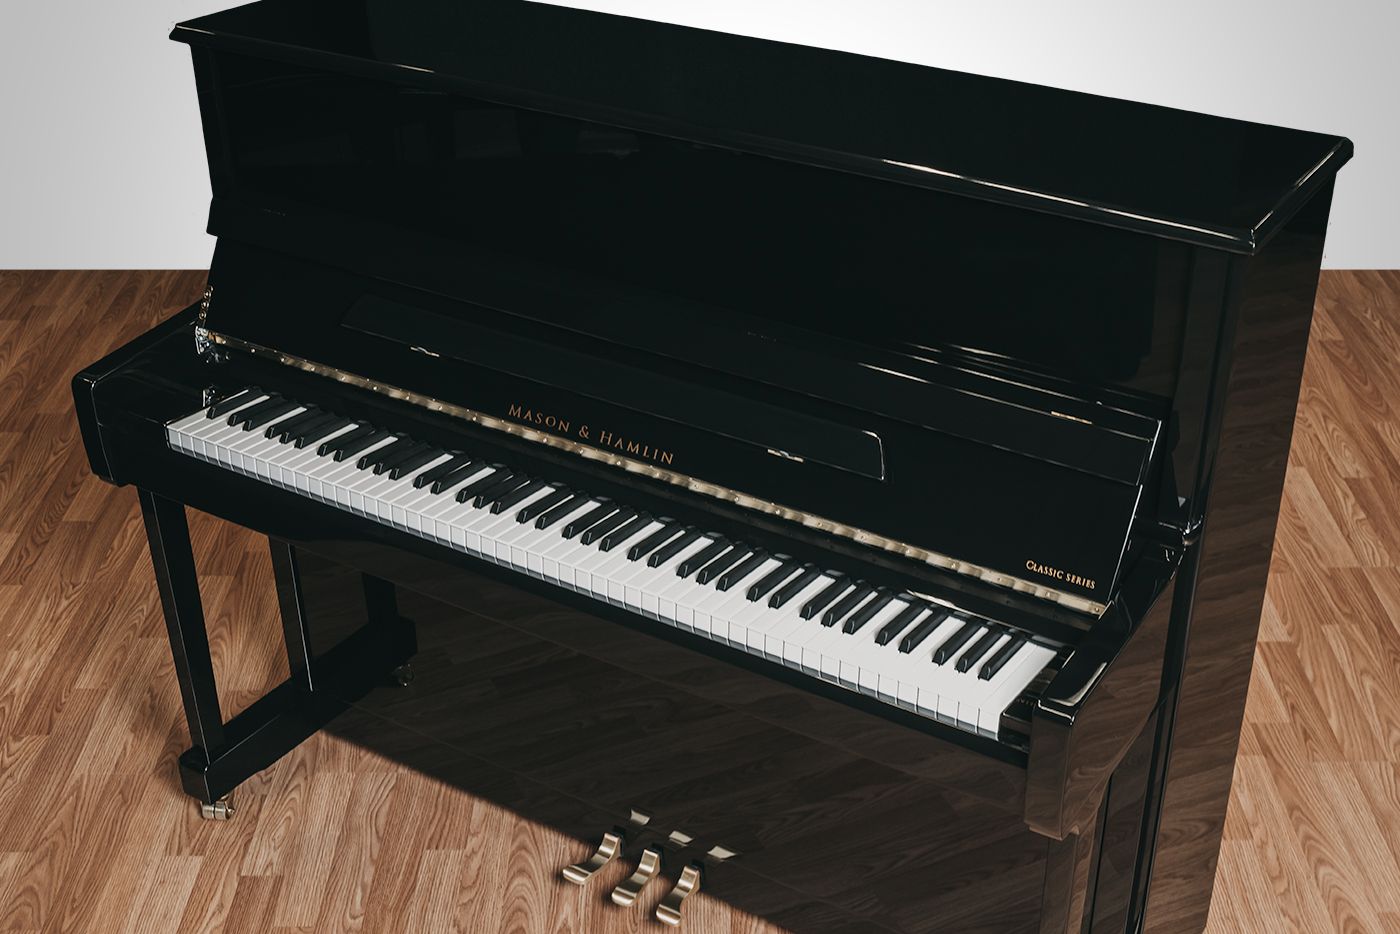 48 Upright MHC 120 • Mason & Hamlin Piano Company • Made in the USA